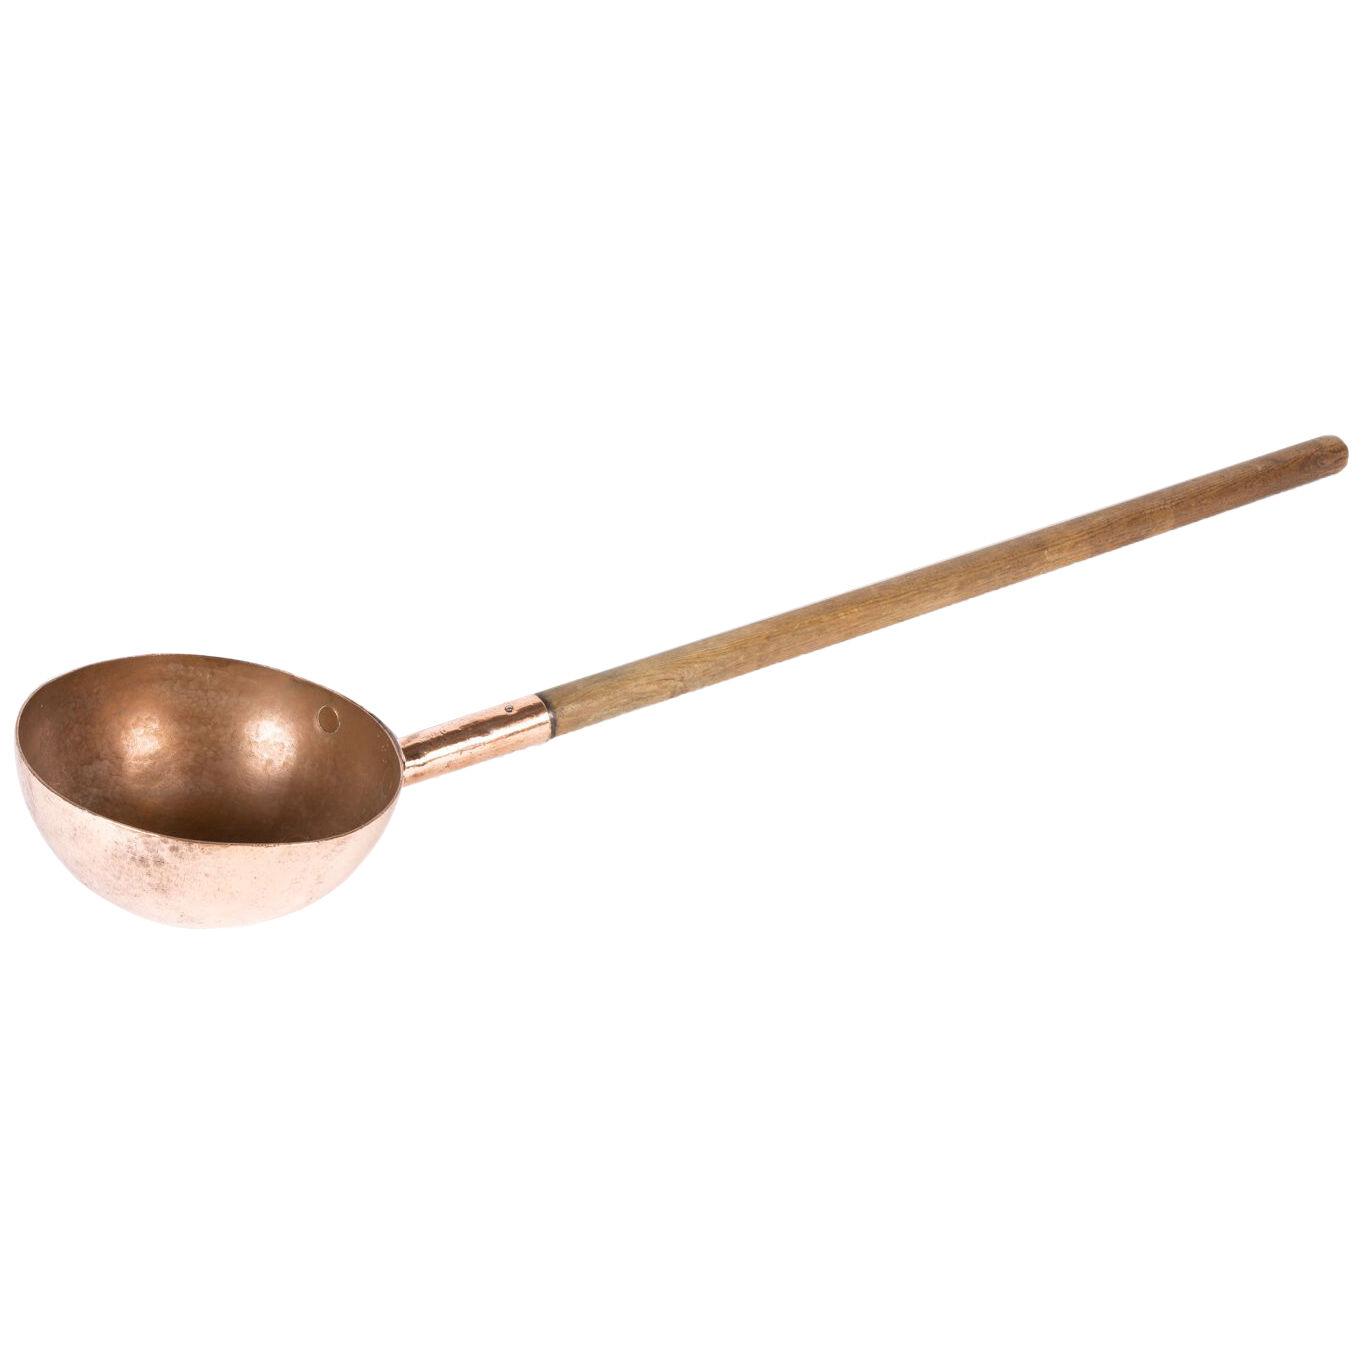 19th century copper chocolatier’s ladle